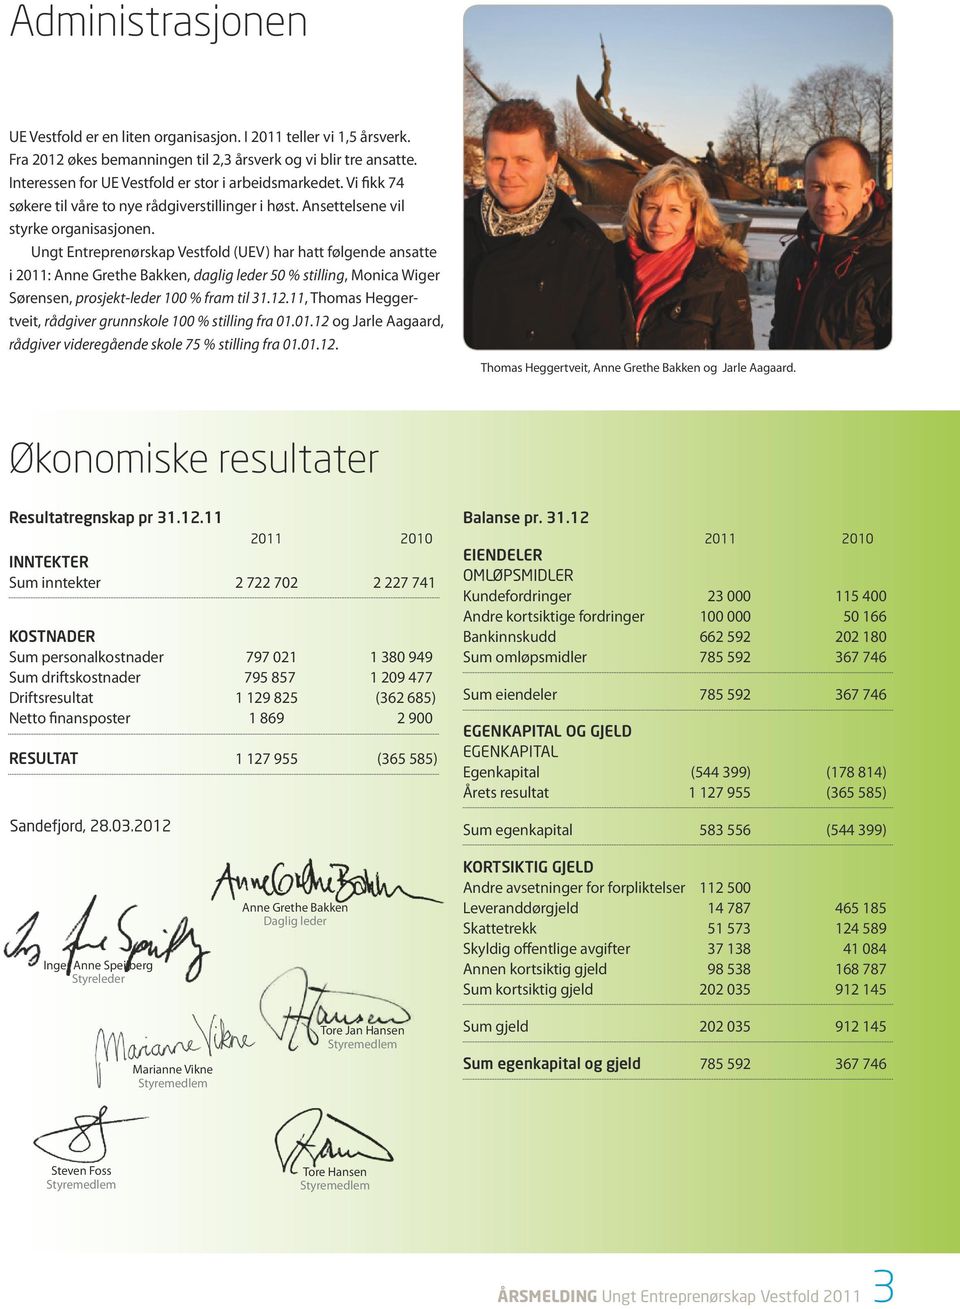 Ungt Entreprenørskap Vestfold (UEV) har hatt følgende ansatte i 2011: Anne Grethe Bakken, daglig leder 50 % stilling, Monica Wiger Sørensen, prosjekt-leder 100 % fram til 31.12.